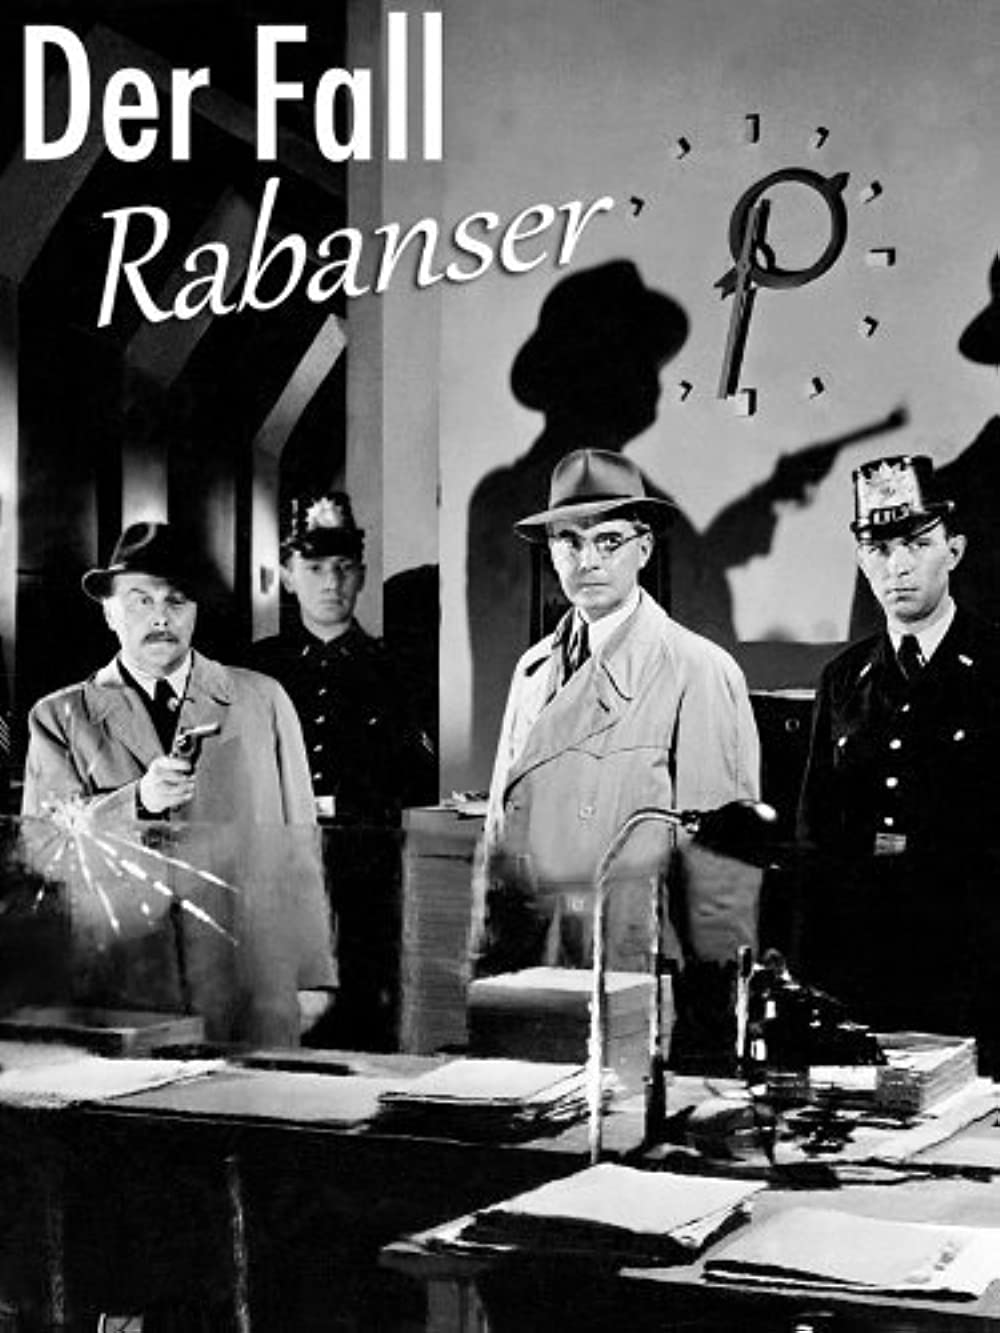 Der Fall Rabanser